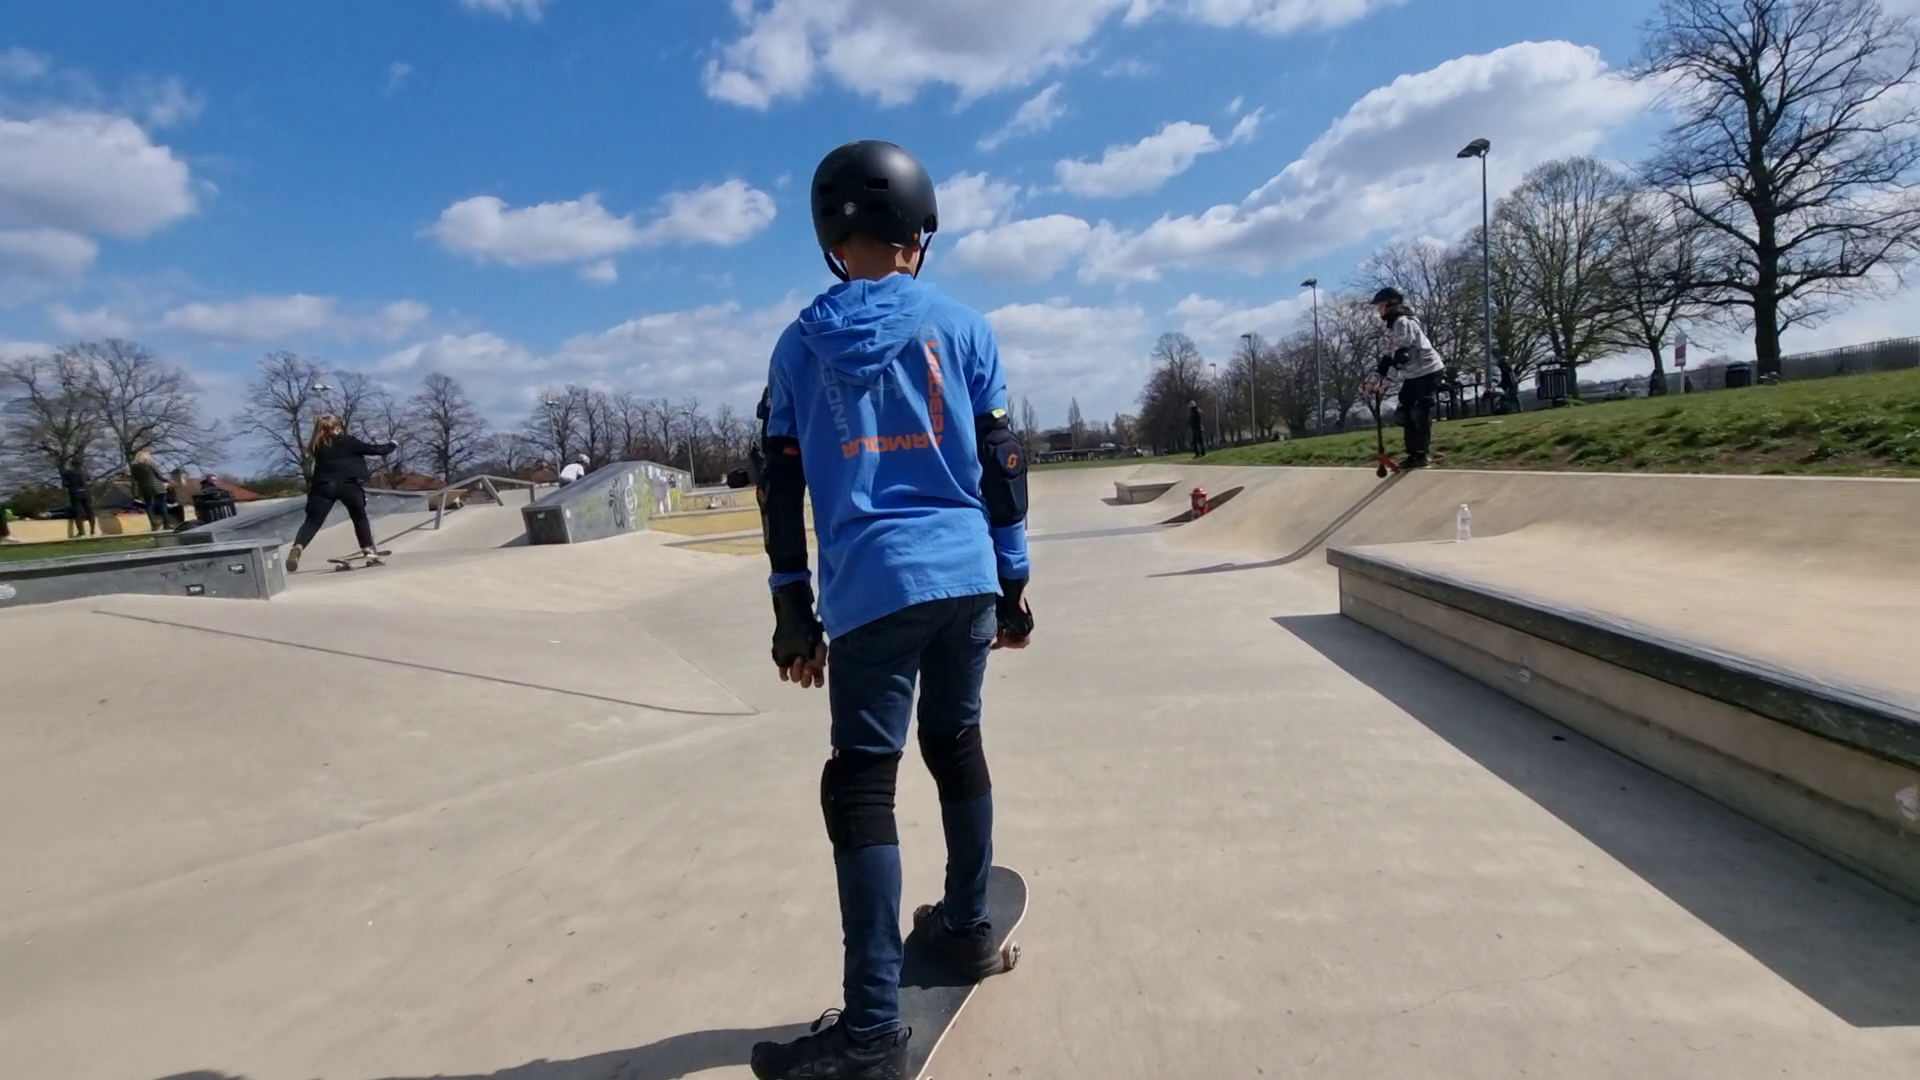 Usk8 - Skateboarding Lessons